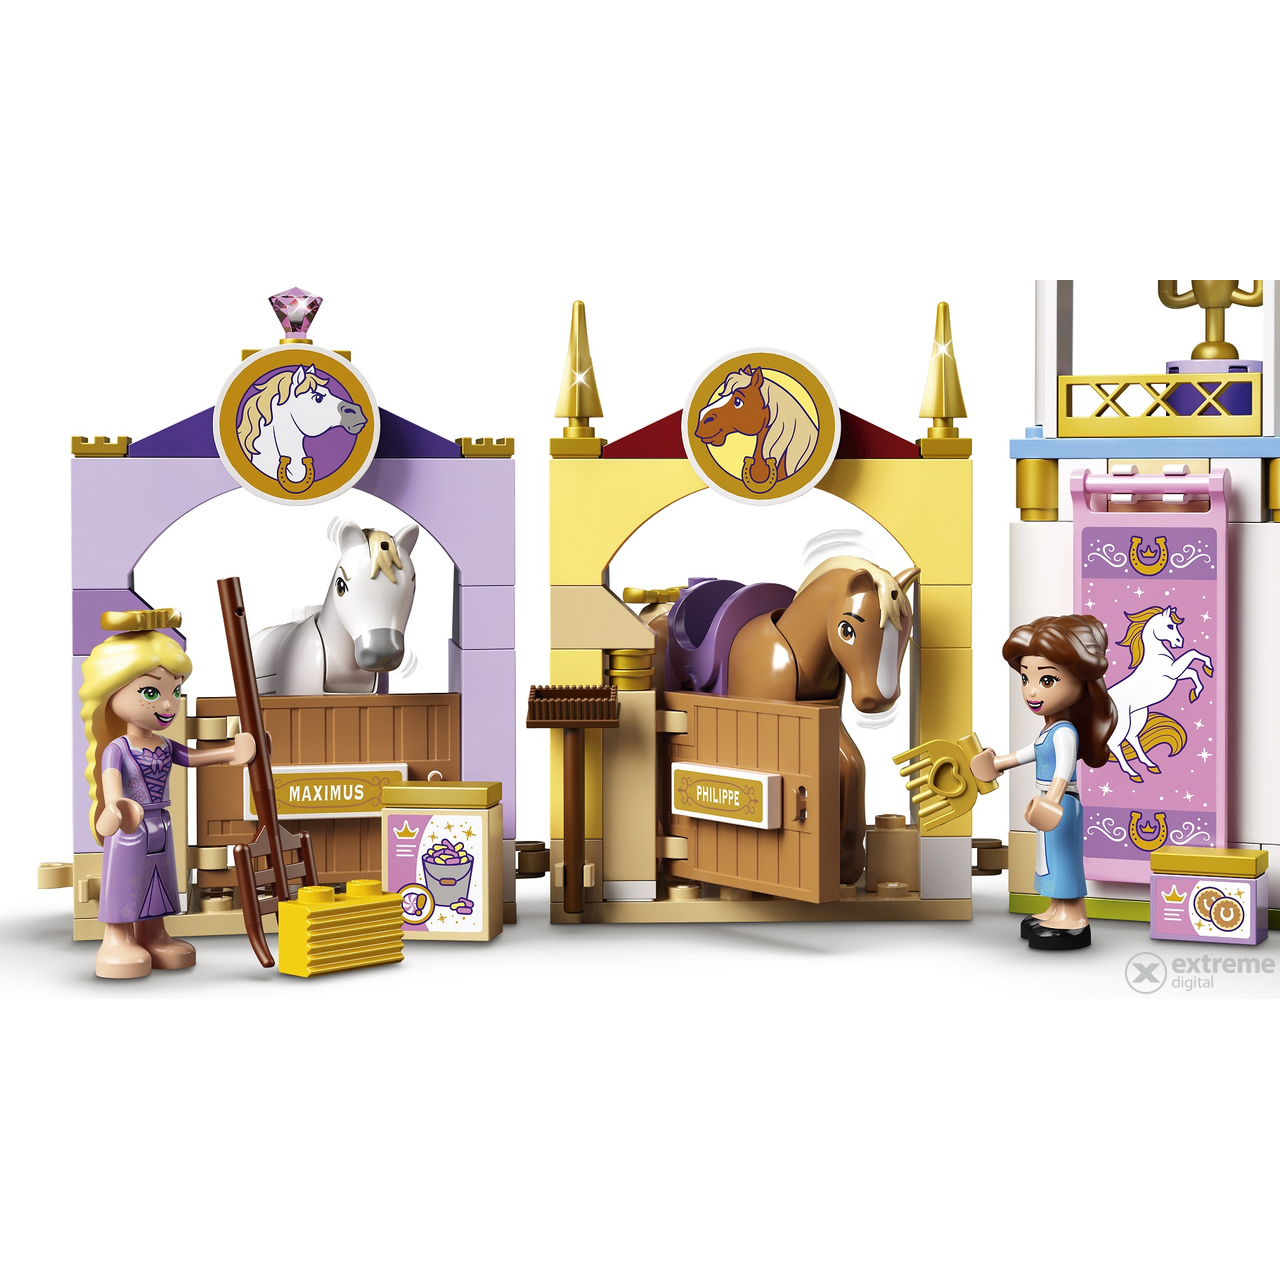 LEGO® Disney Princess™ 43195 Královské stáje Krásky a Lociky